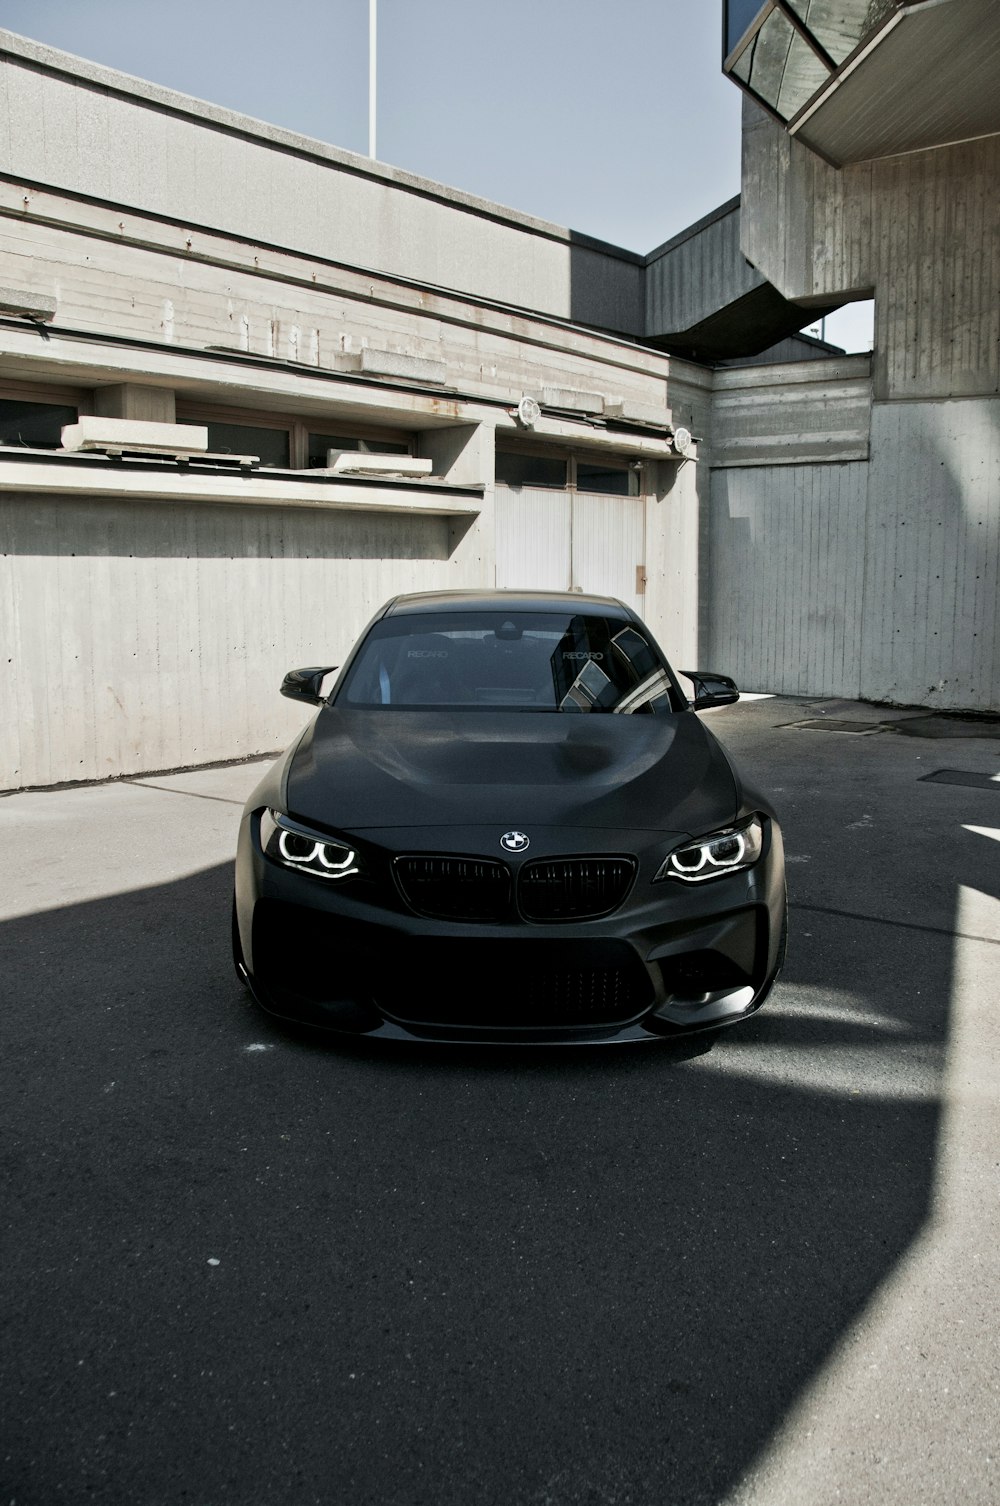 Coche BMW negro aparcado sobre suelo de hormigón gris durante el día